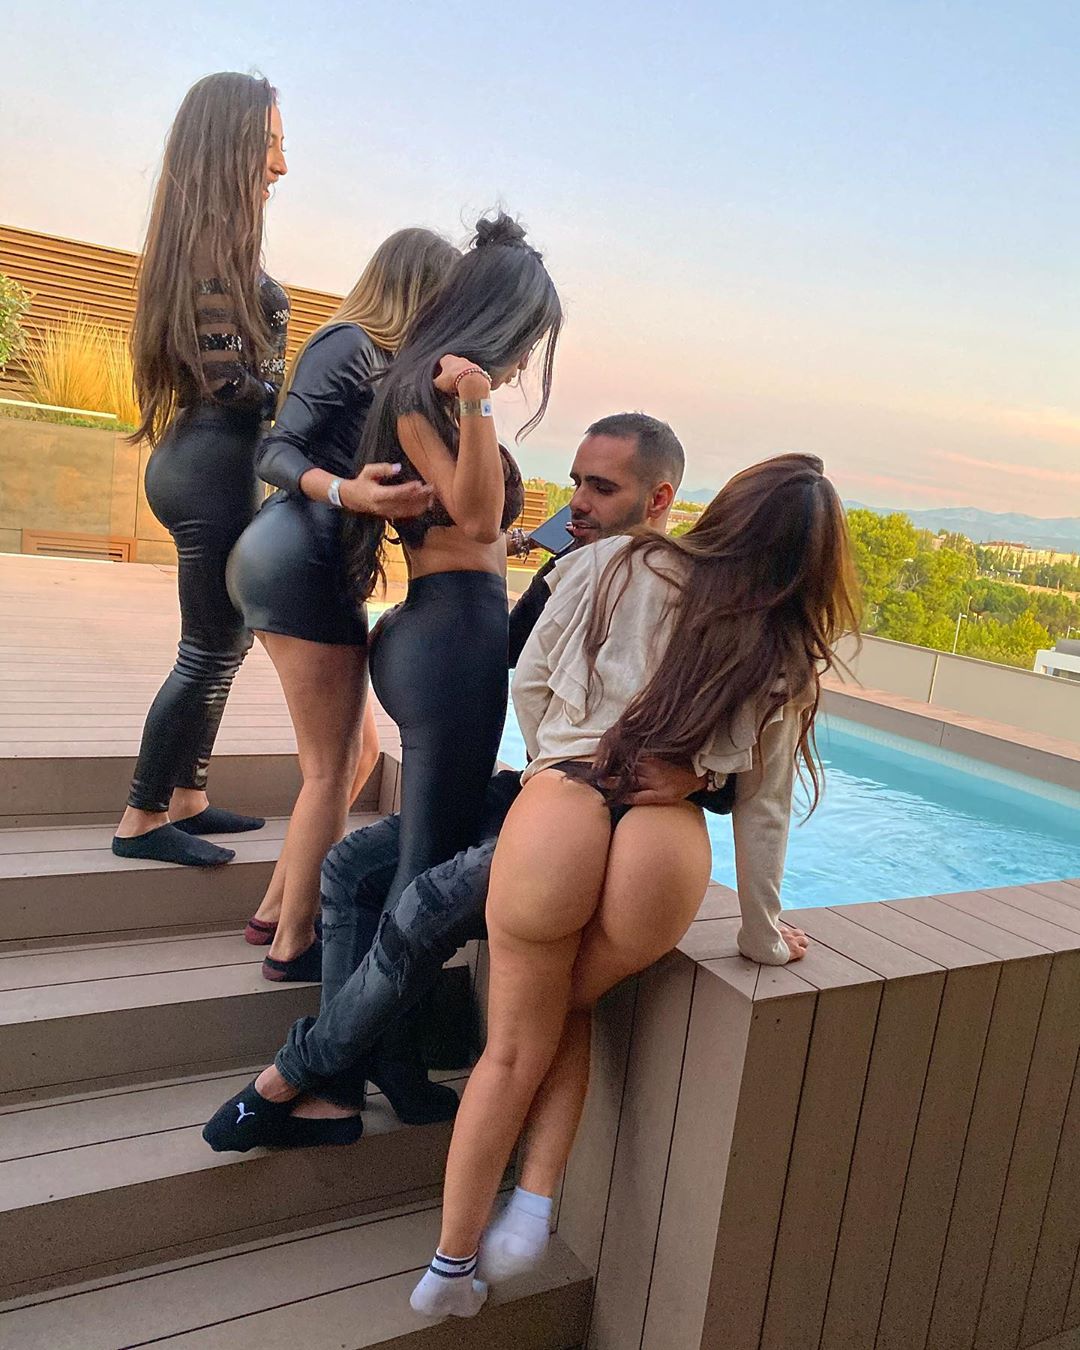 ساشا سبحانی به همراه چهار دختر سکسی اسپانیایی سیاه پوش